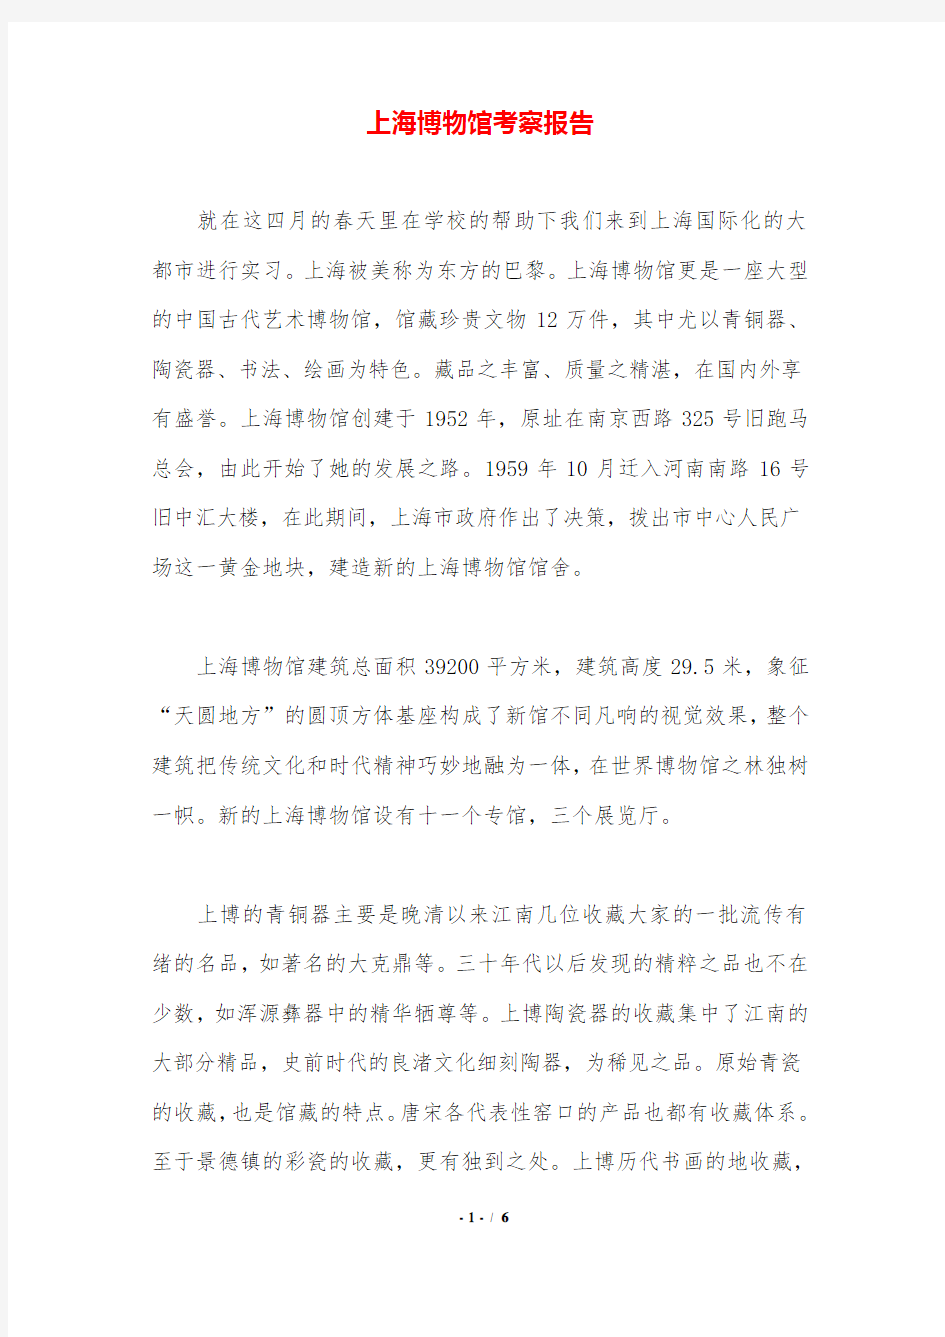 上海博物馆考察报告